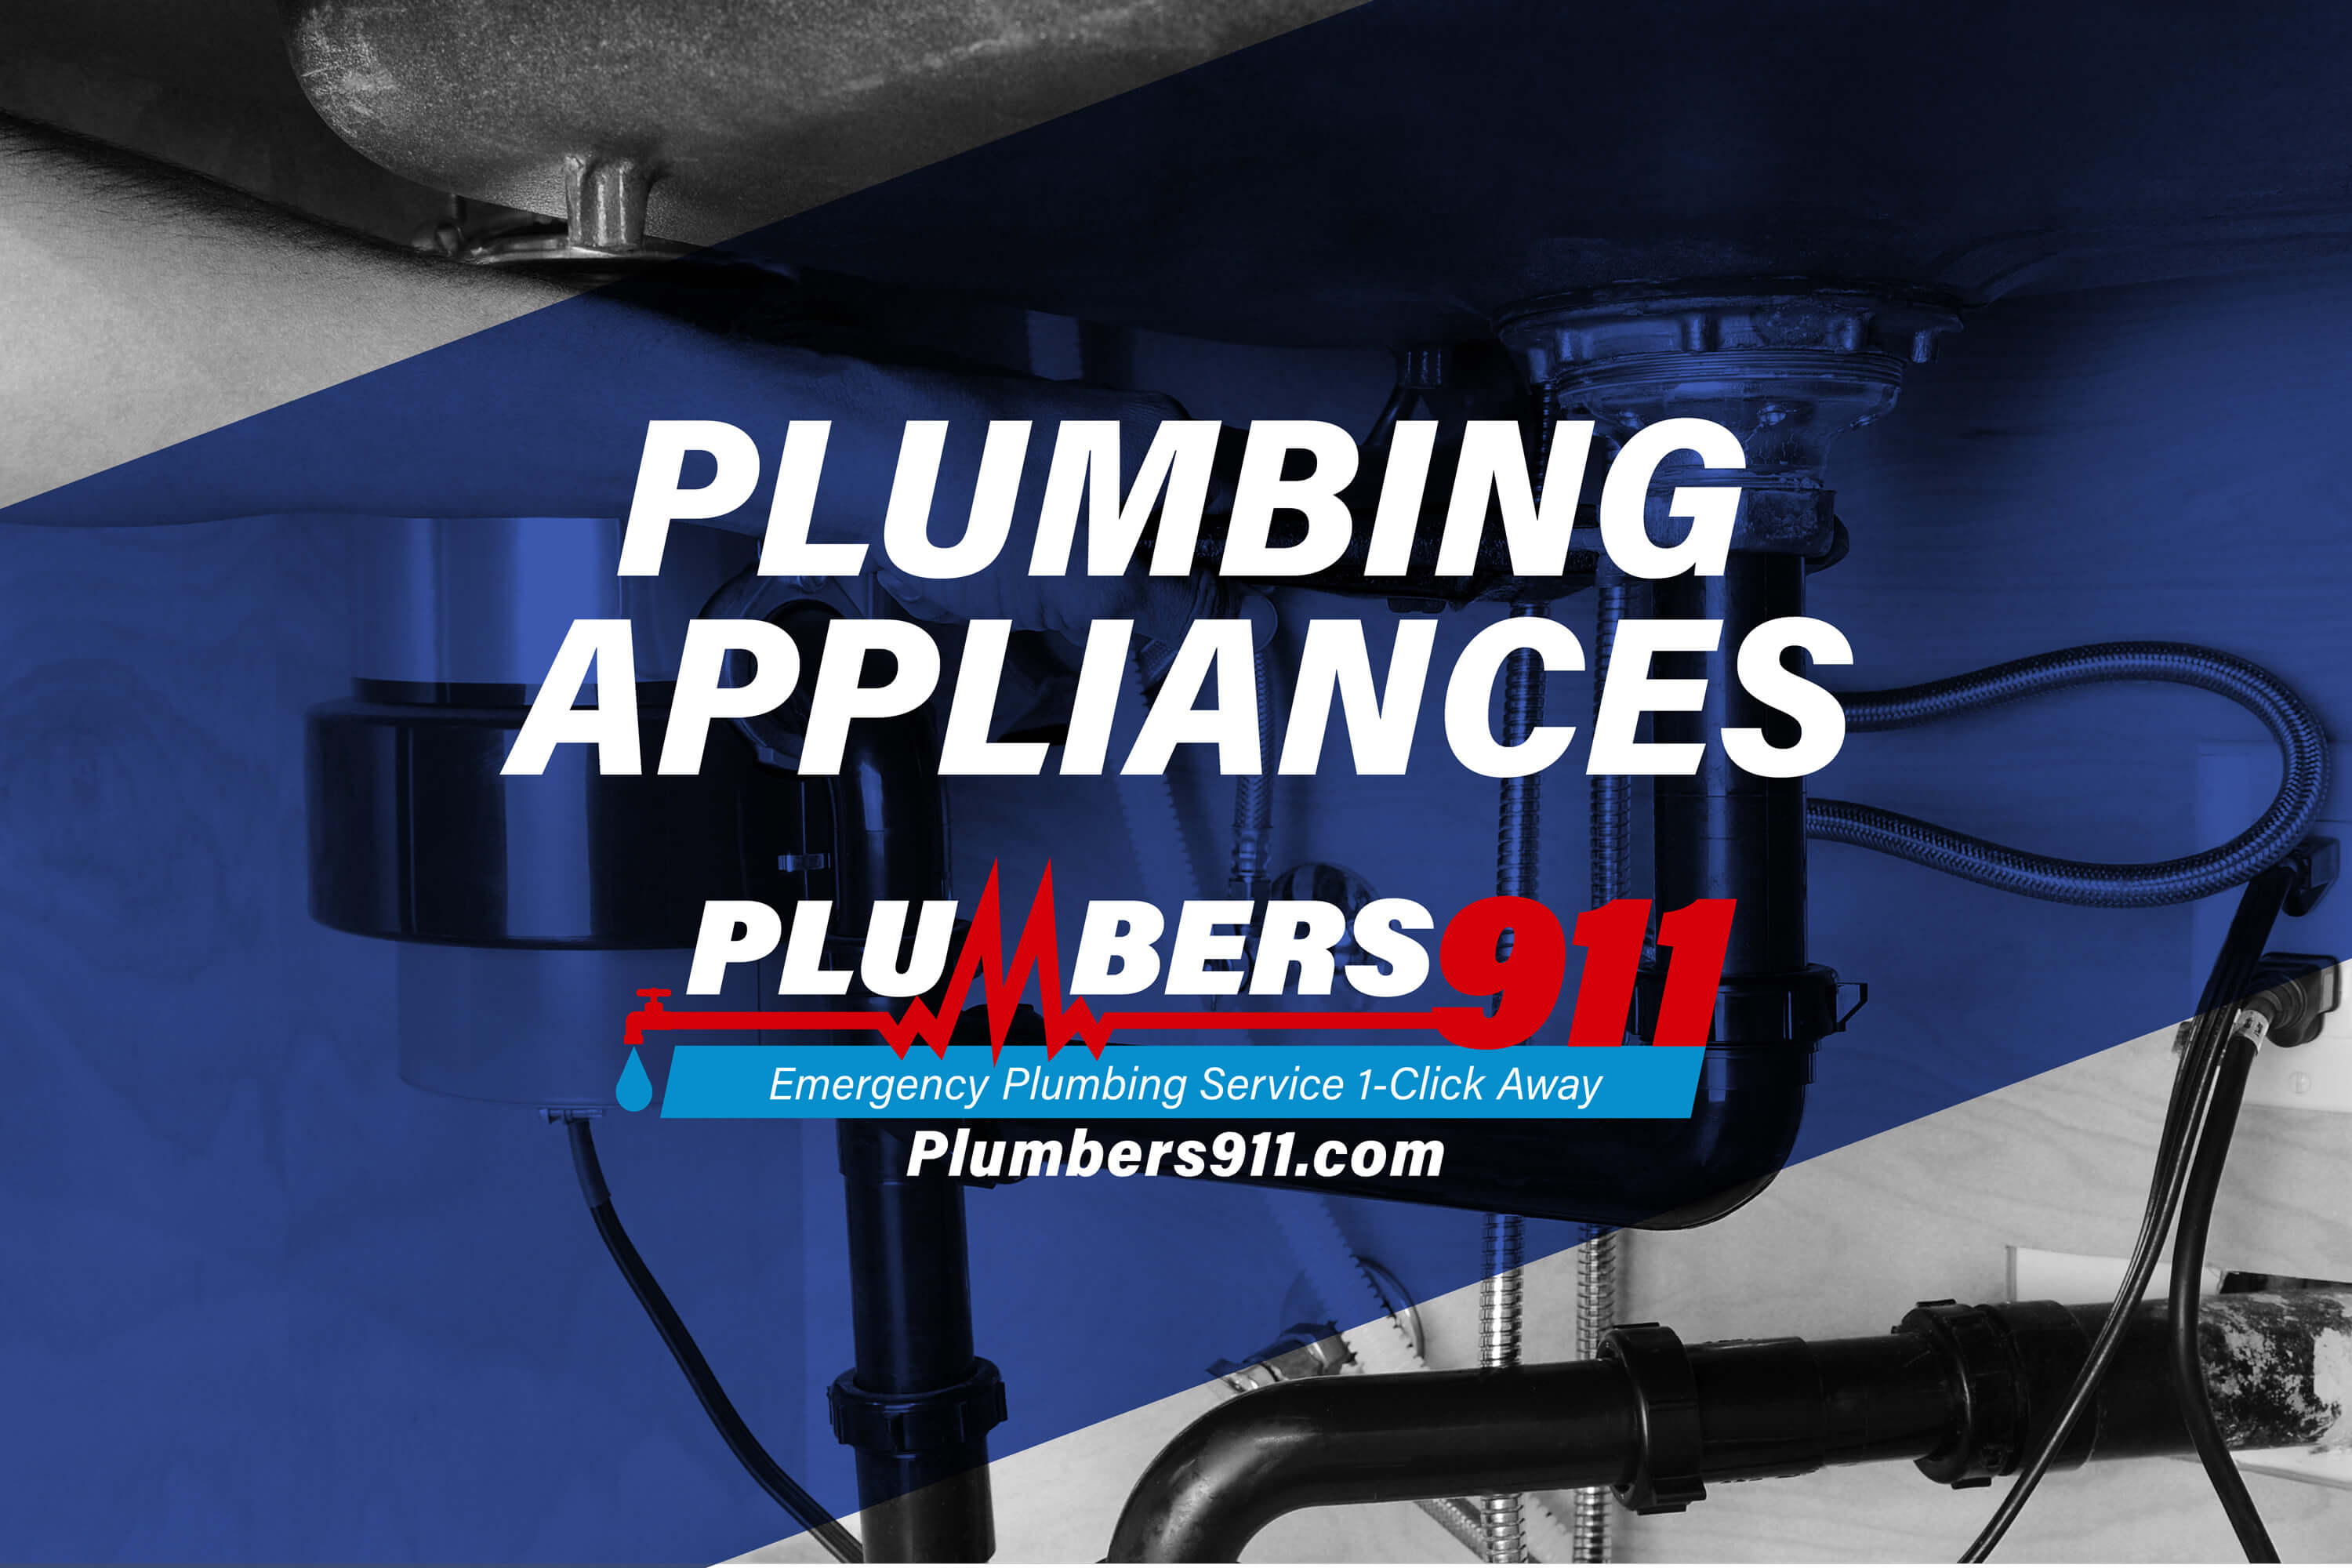 Plumbers 911 - Emergency Plumbing Services - Plumbing Appliances